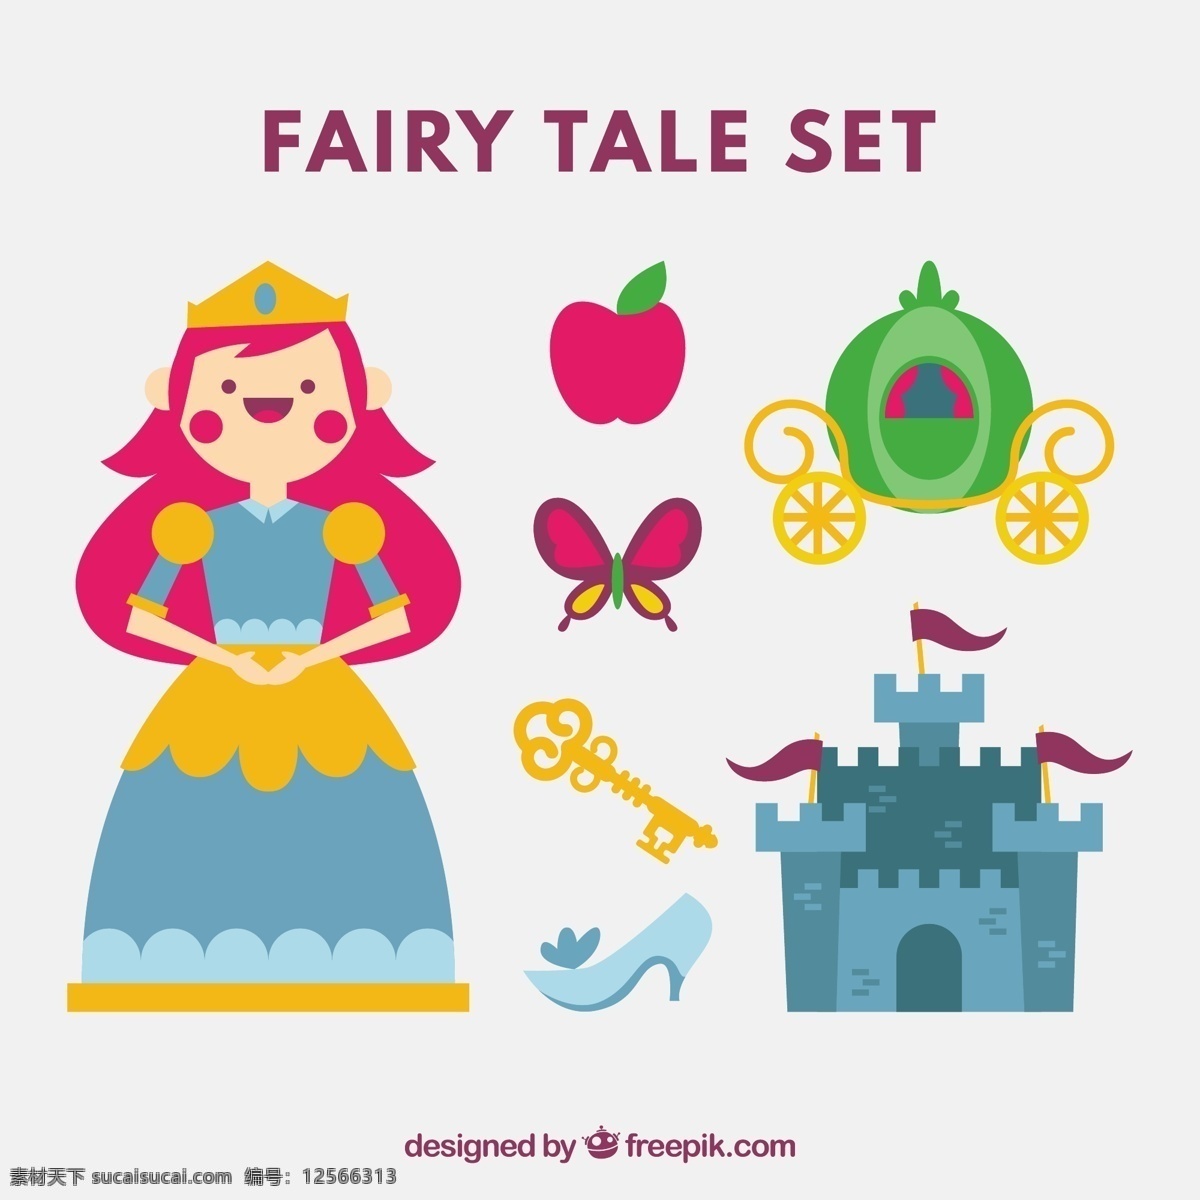 快乐 公主 故事 元素 蝴蝶 苹果 平坦 钥匙 城堡 创意 平面设计 童话 人物 幻想 马车 想象 美好 白色